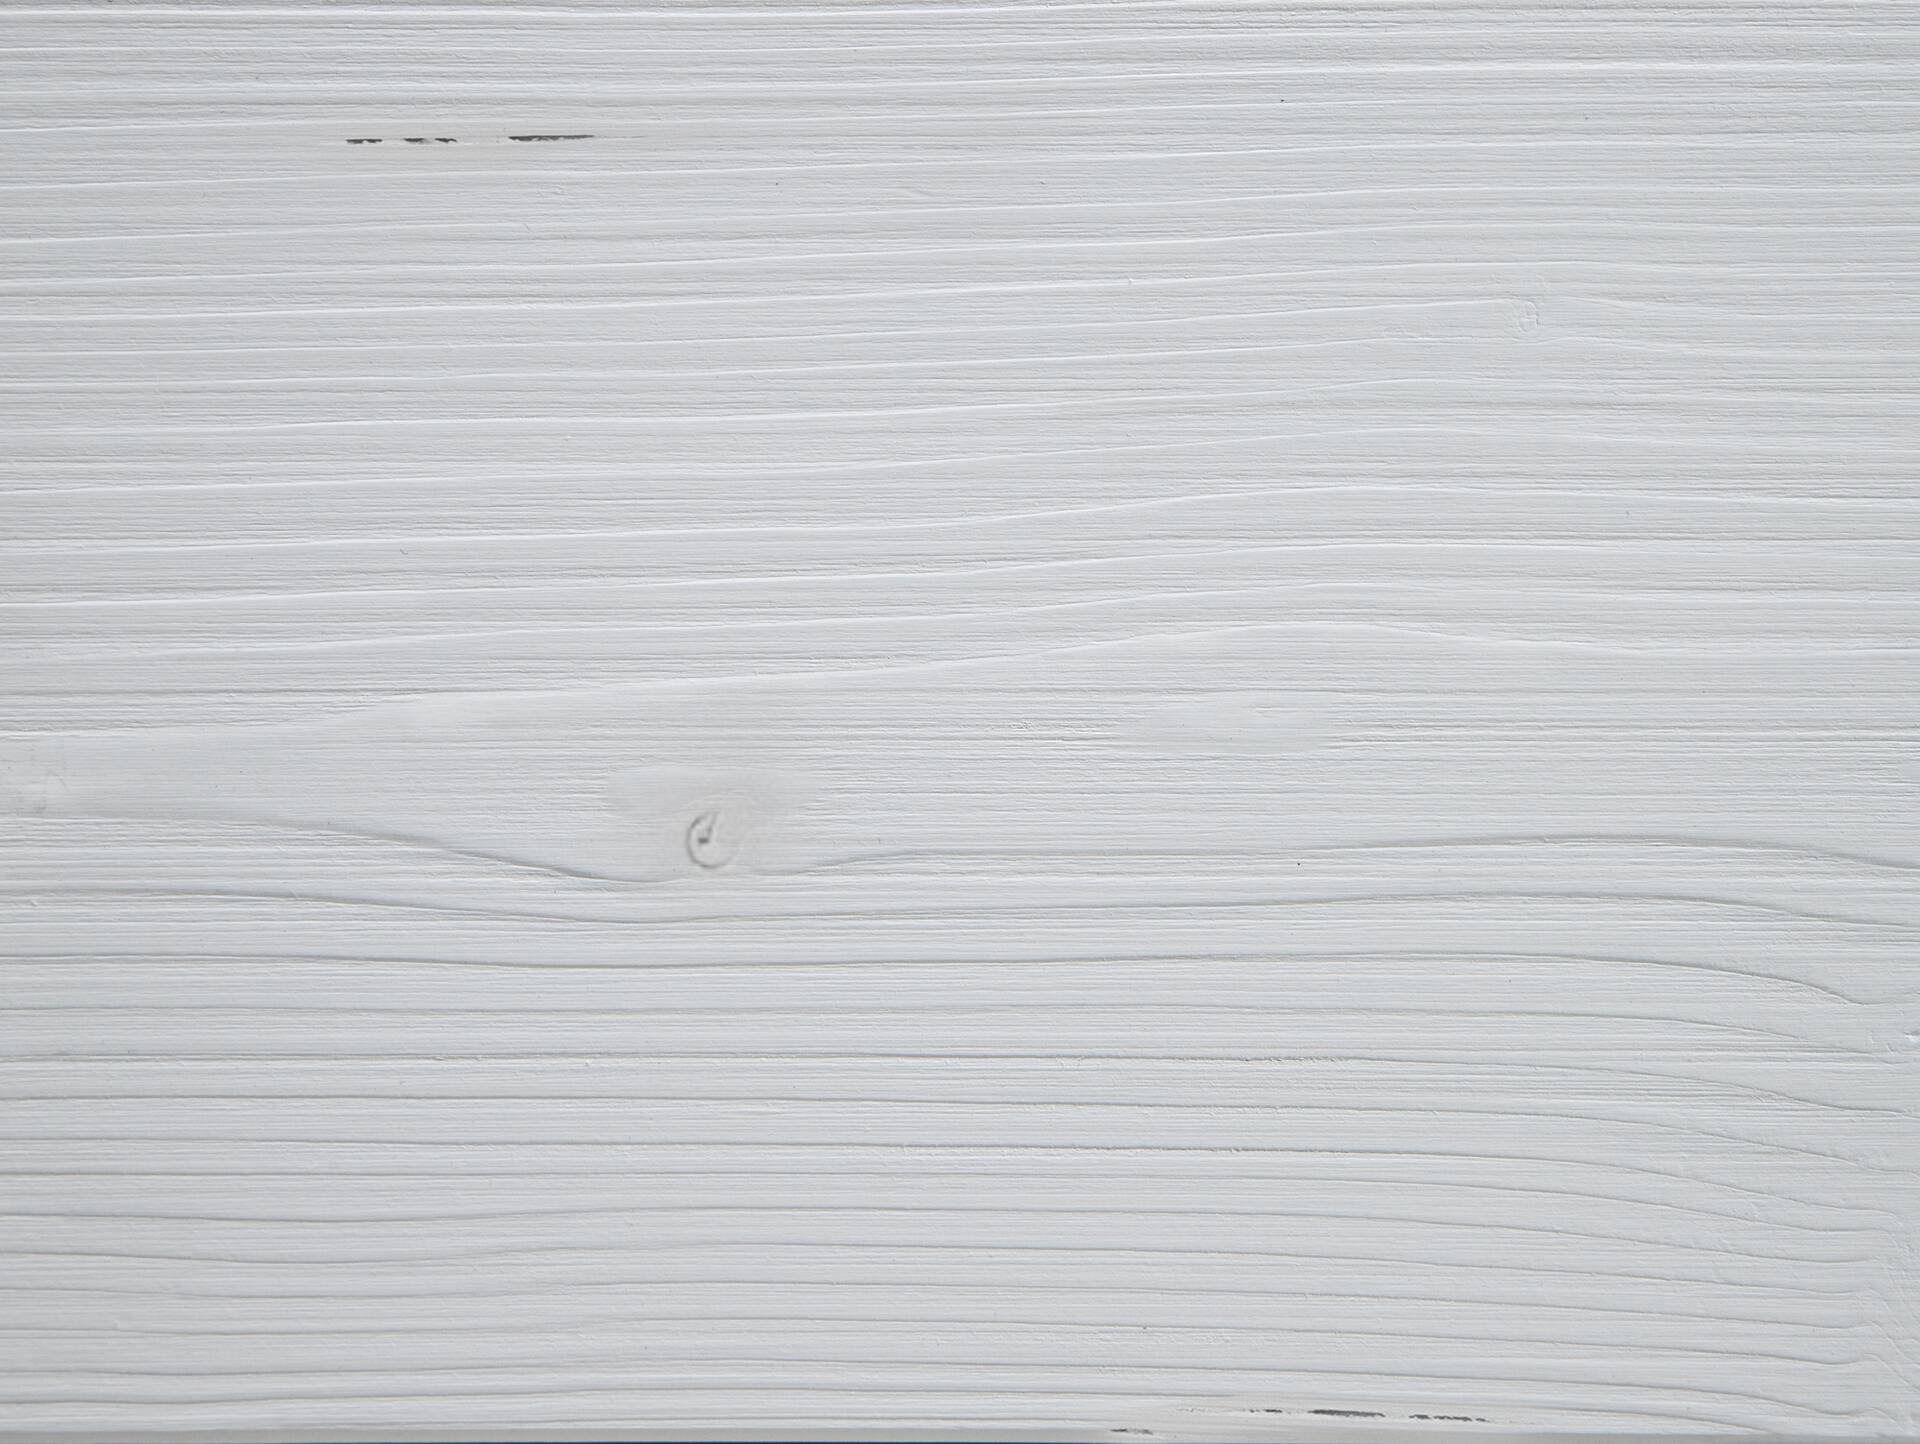 LUKY Bett Metallfuß, mit Polsterkopfteil, Material Massivholz, Fichte massiv 180 x 200 cm | weiss | Kunstleder Schwarz